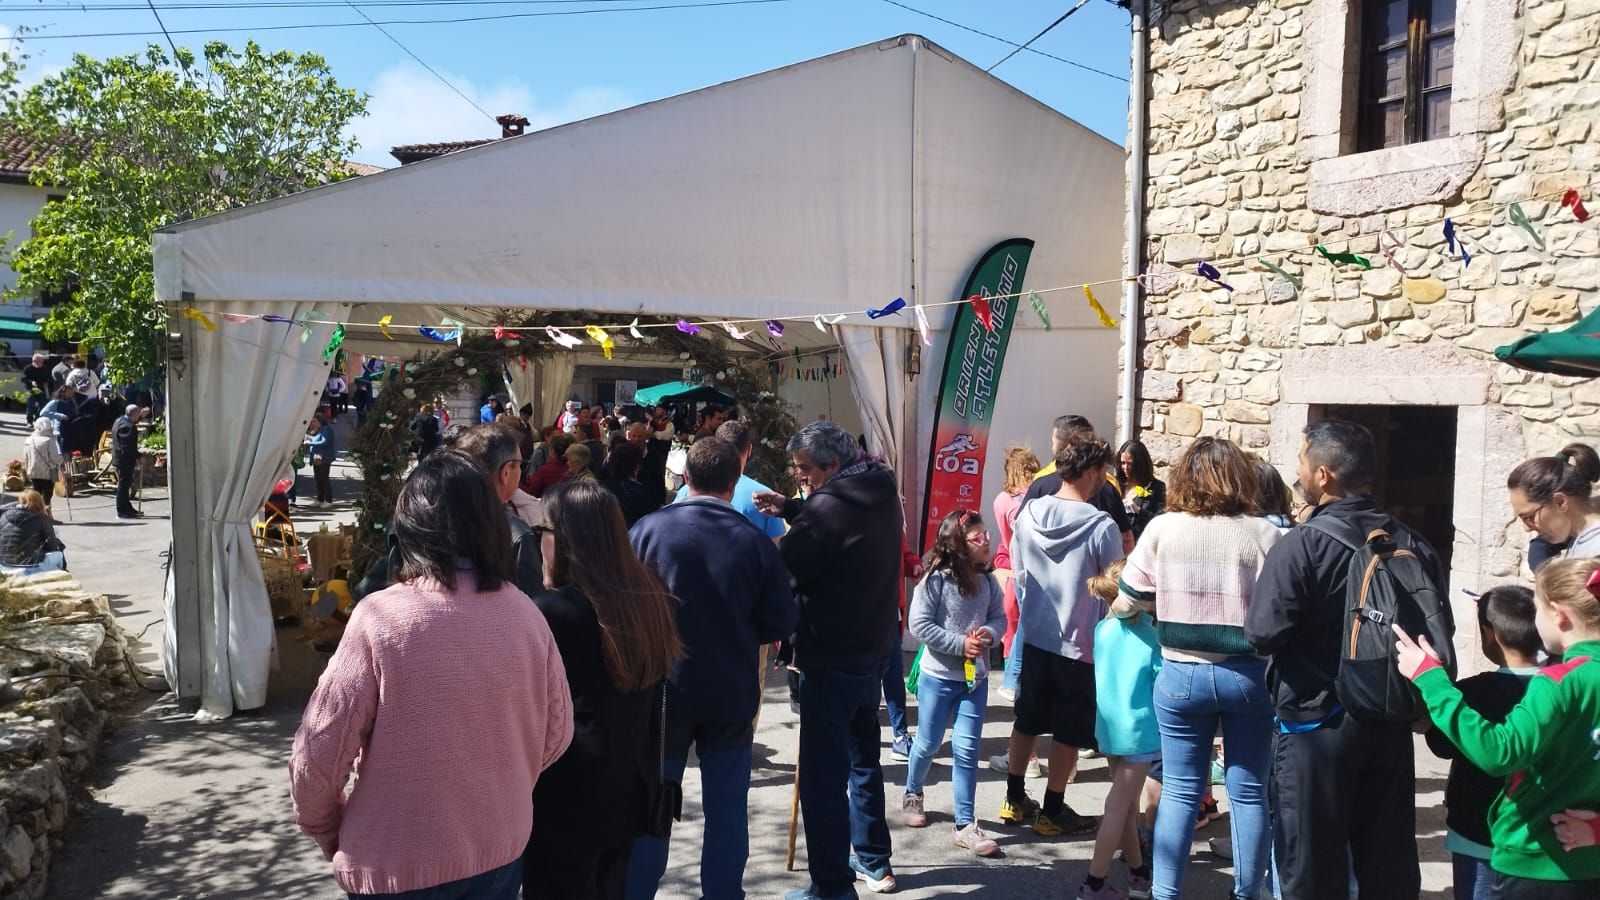 Arangas de Cabrales despliega su historia y tradiciones en el IV Festival Comunitario del concejo